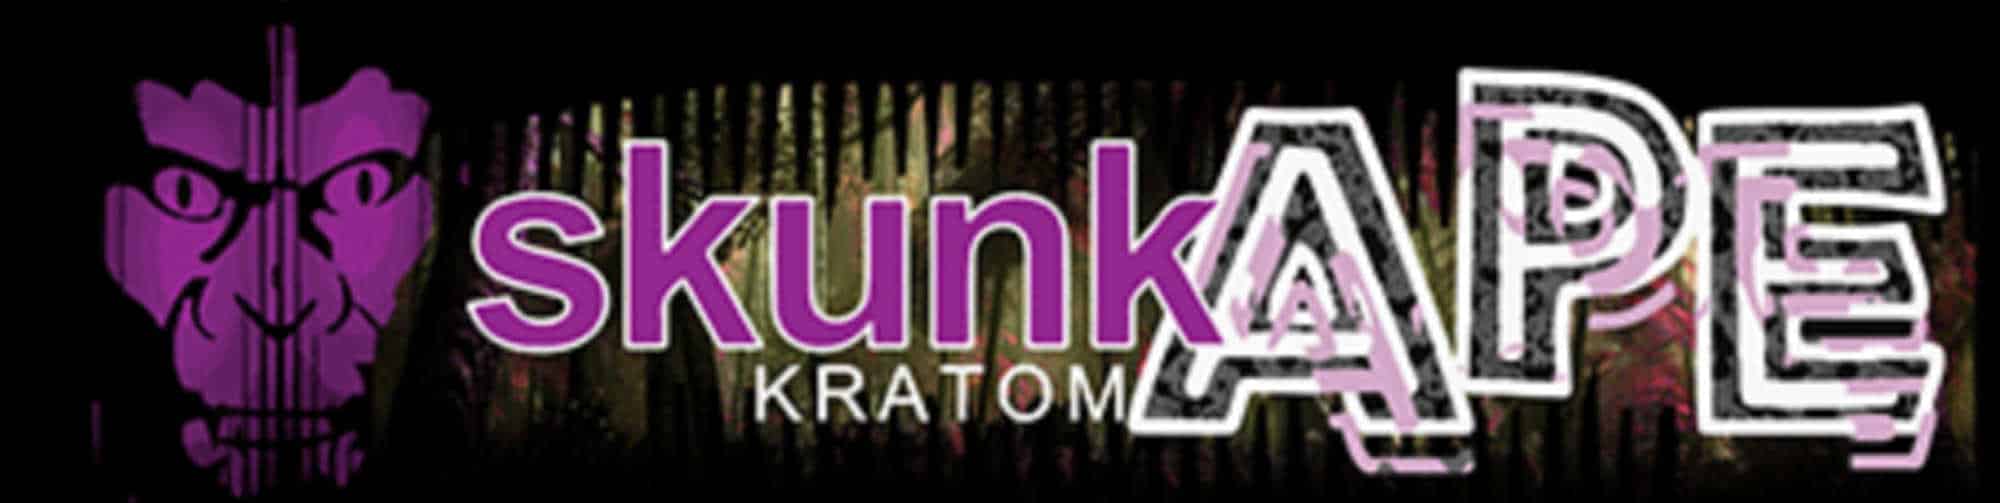 image of skunk ape logo